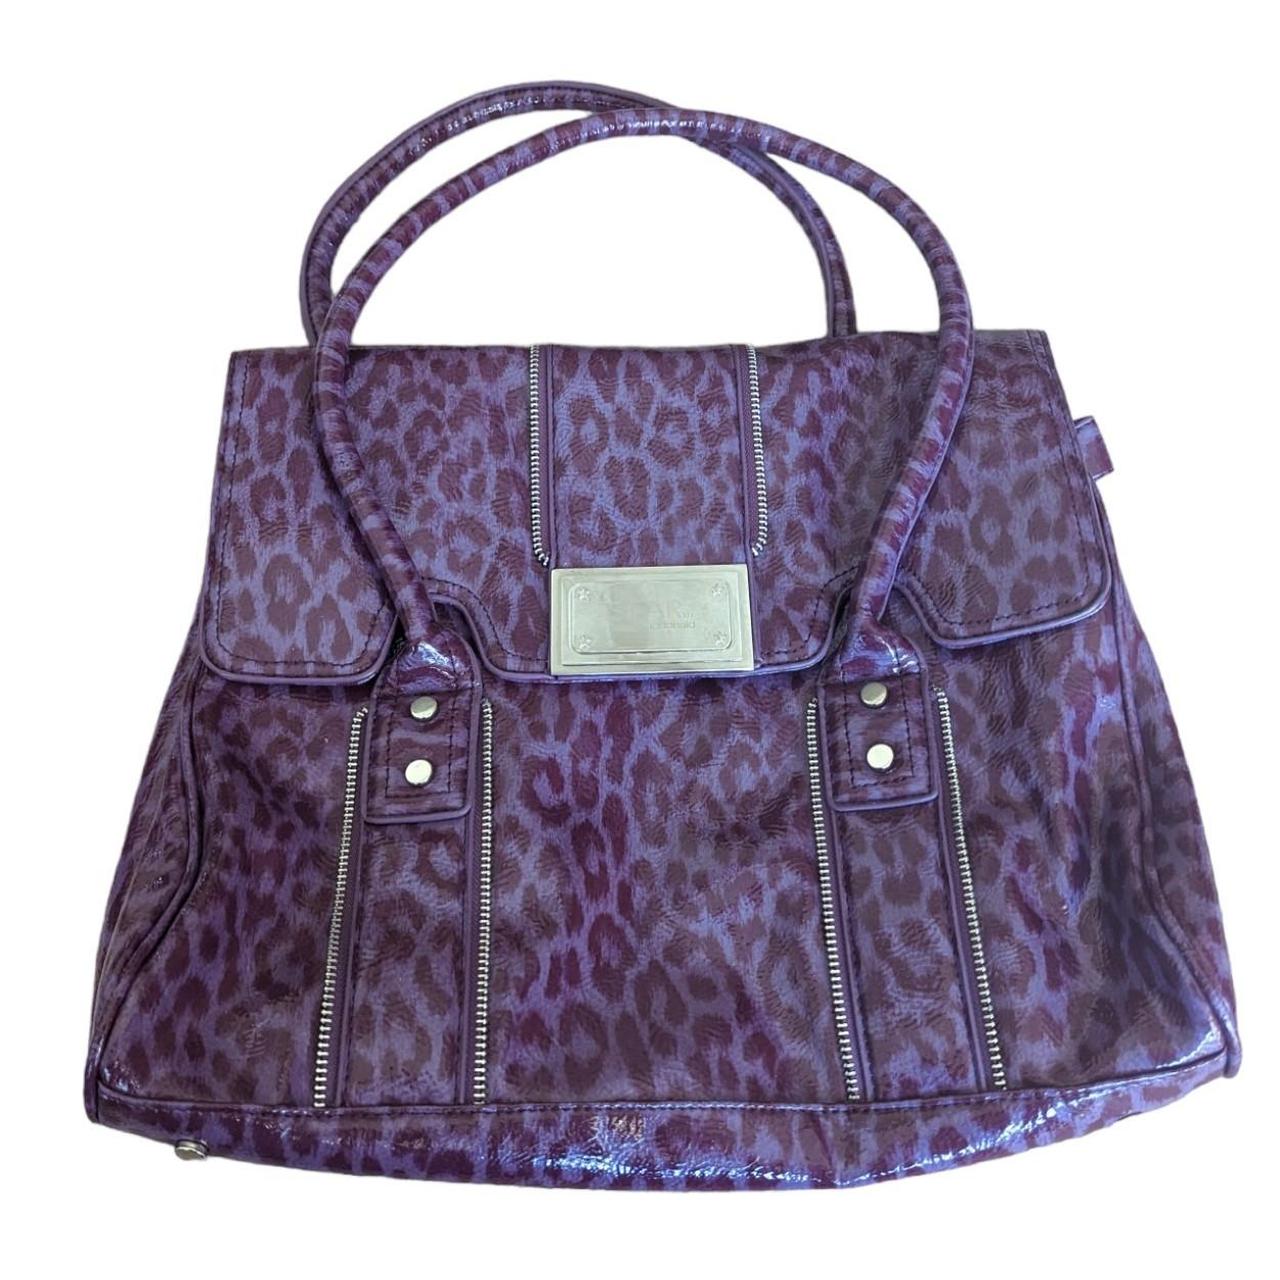 Debenhams Women's Purple Bag (3)